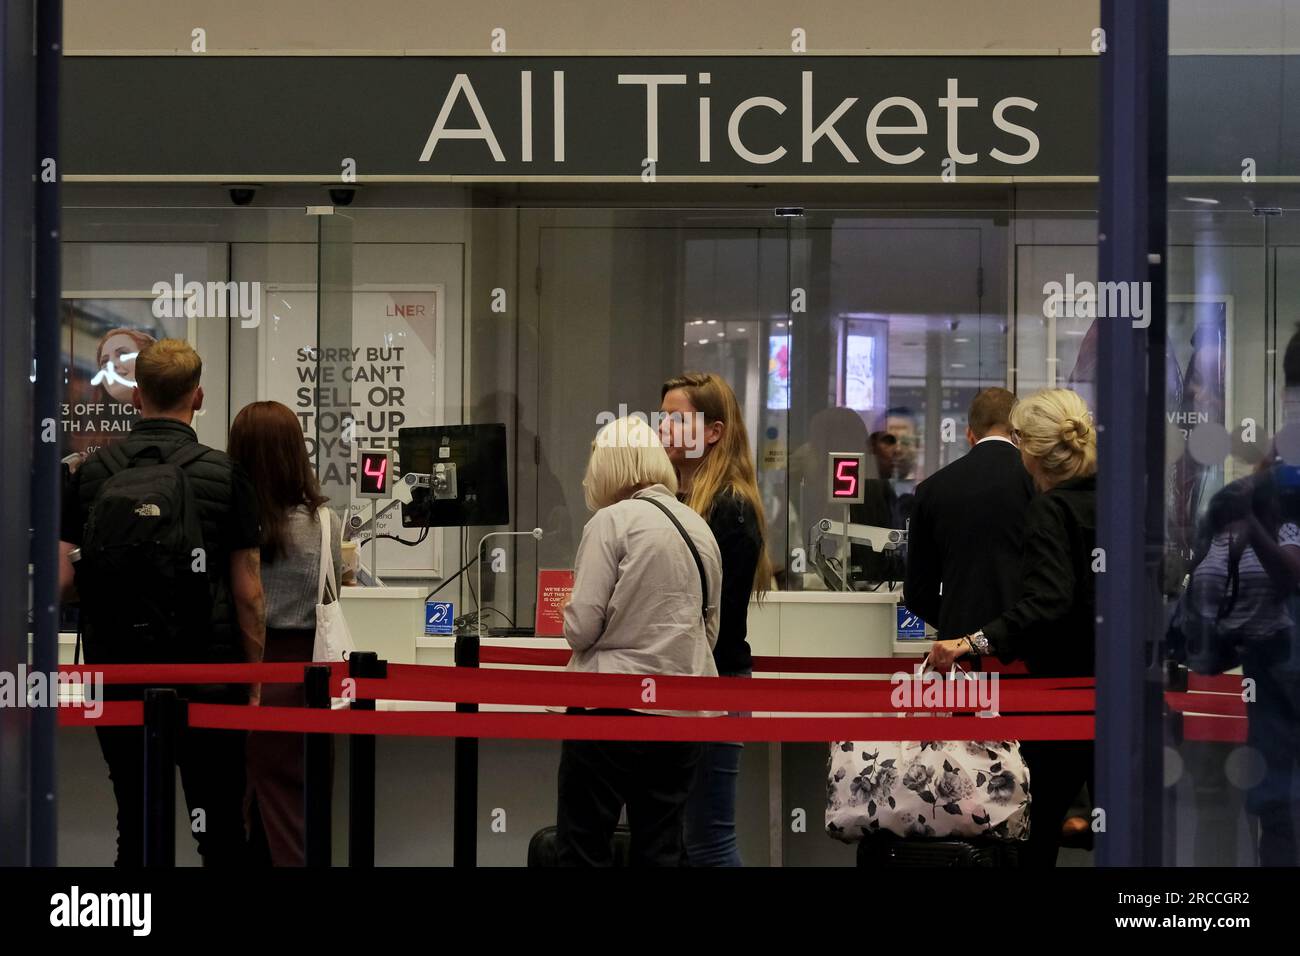 Londra, Regno Unito. La gente aspetta in fila alla biglietteria della ferrovia King's Cross. I servizi della stazione coprono le Midlands, il nord e la Scozia. Foto Stock